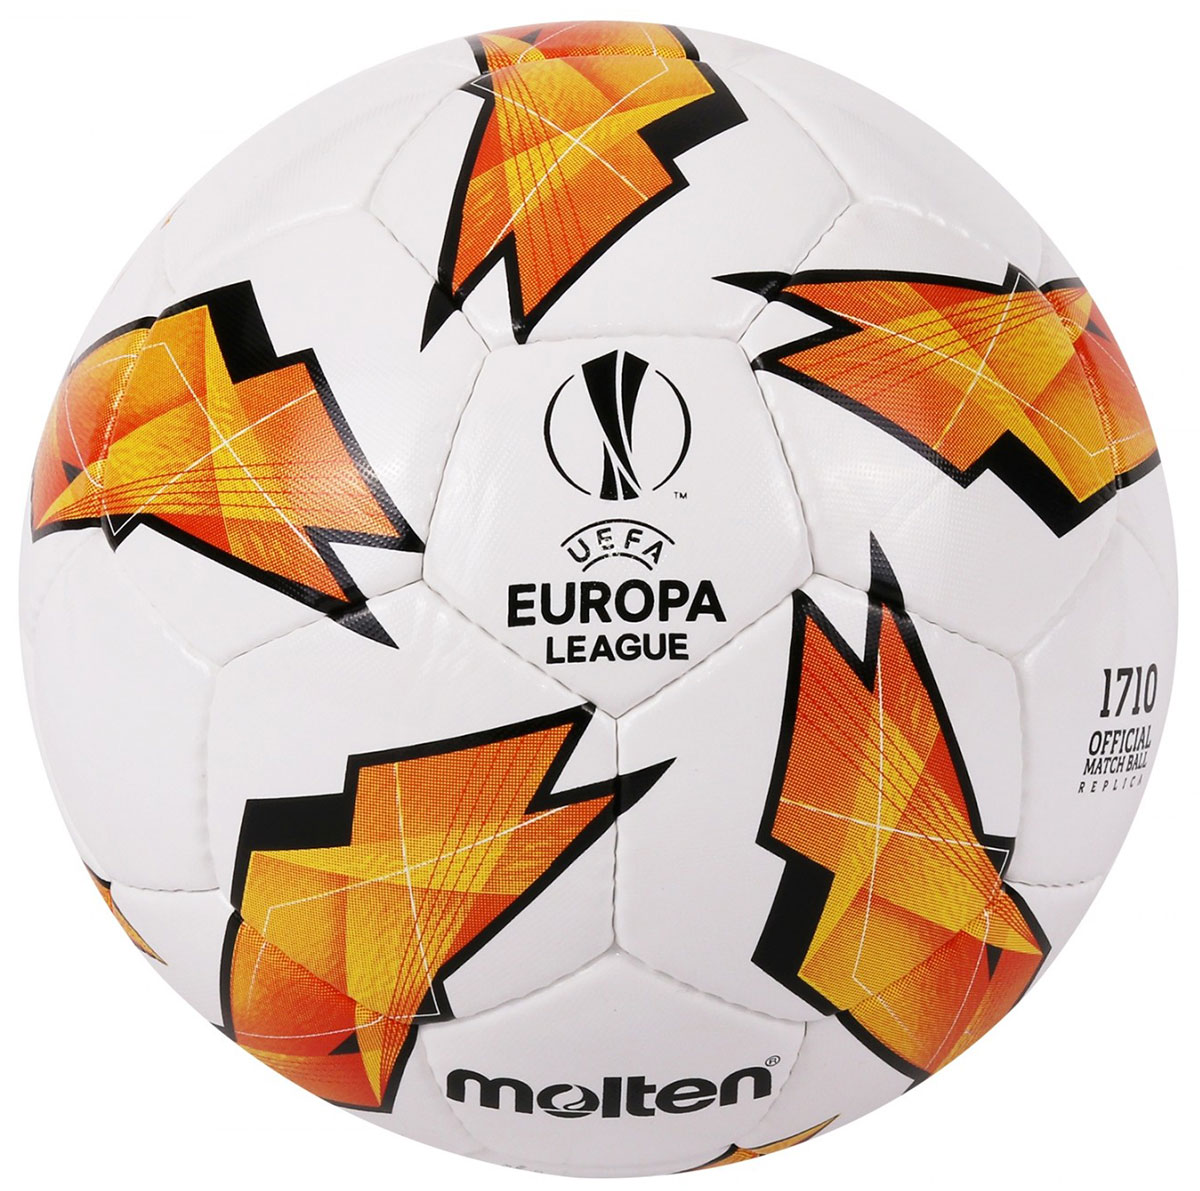 MOLTEN OFFICIAL MATCH BALL REPLICA OF THE UEFA EUROPA LEAGUE - 1710 MODEL